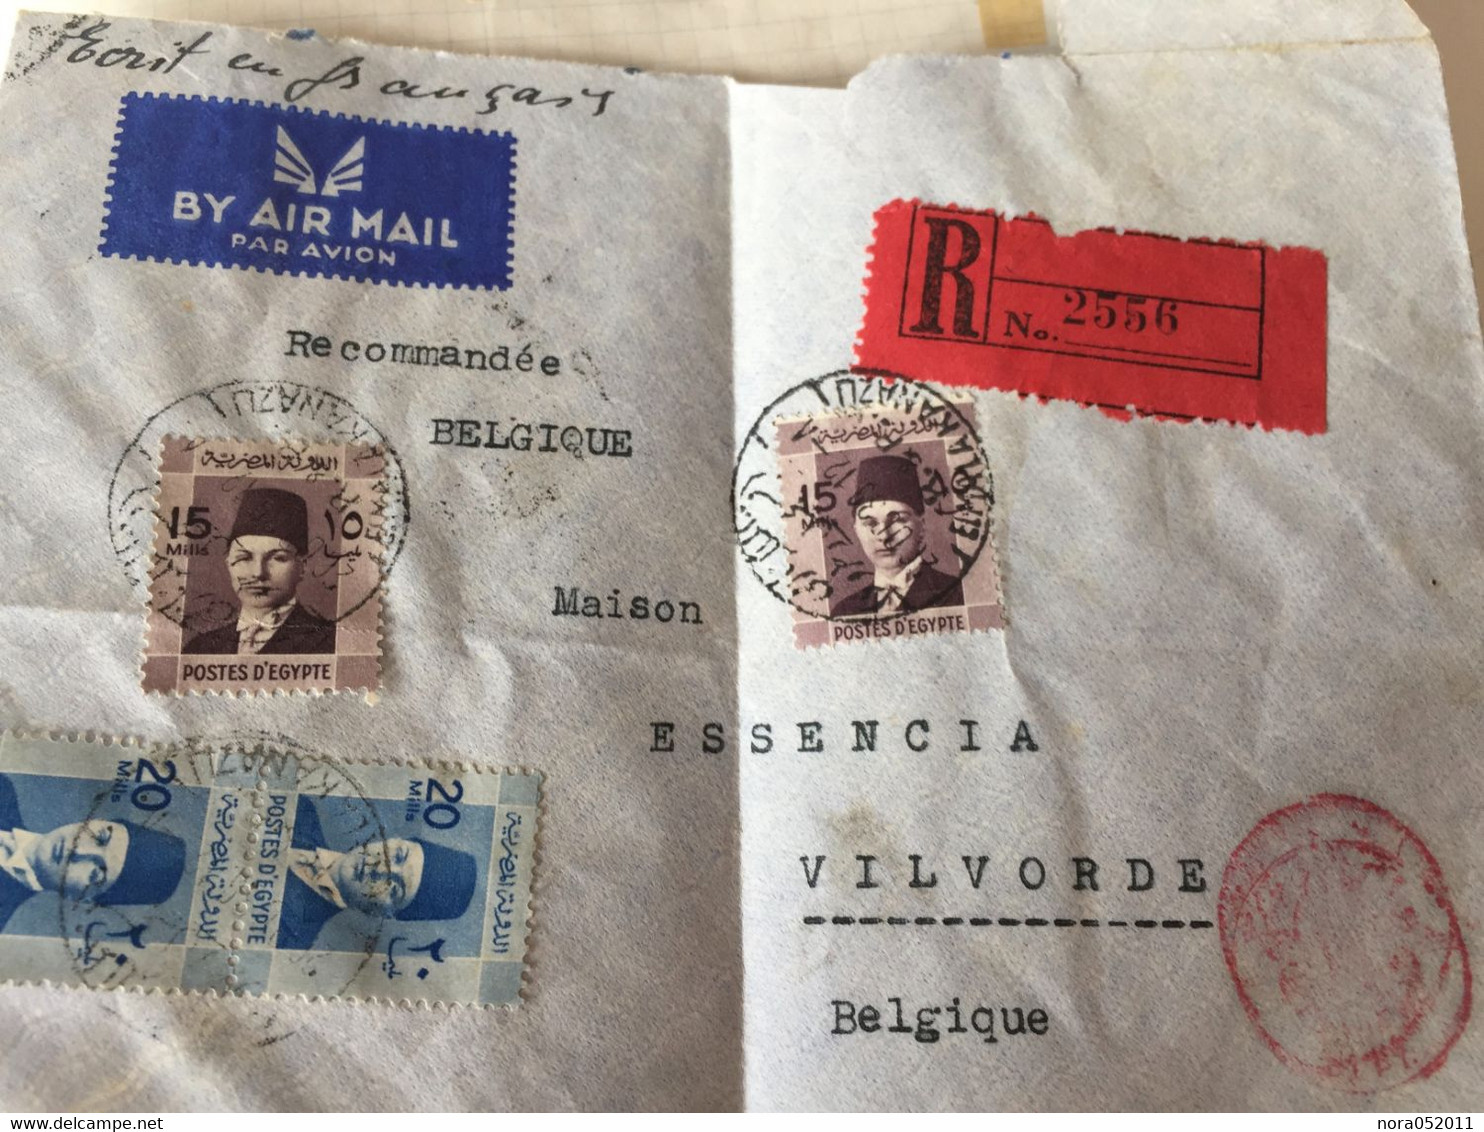 Lot de milliers de timbres classique du monde voir photos